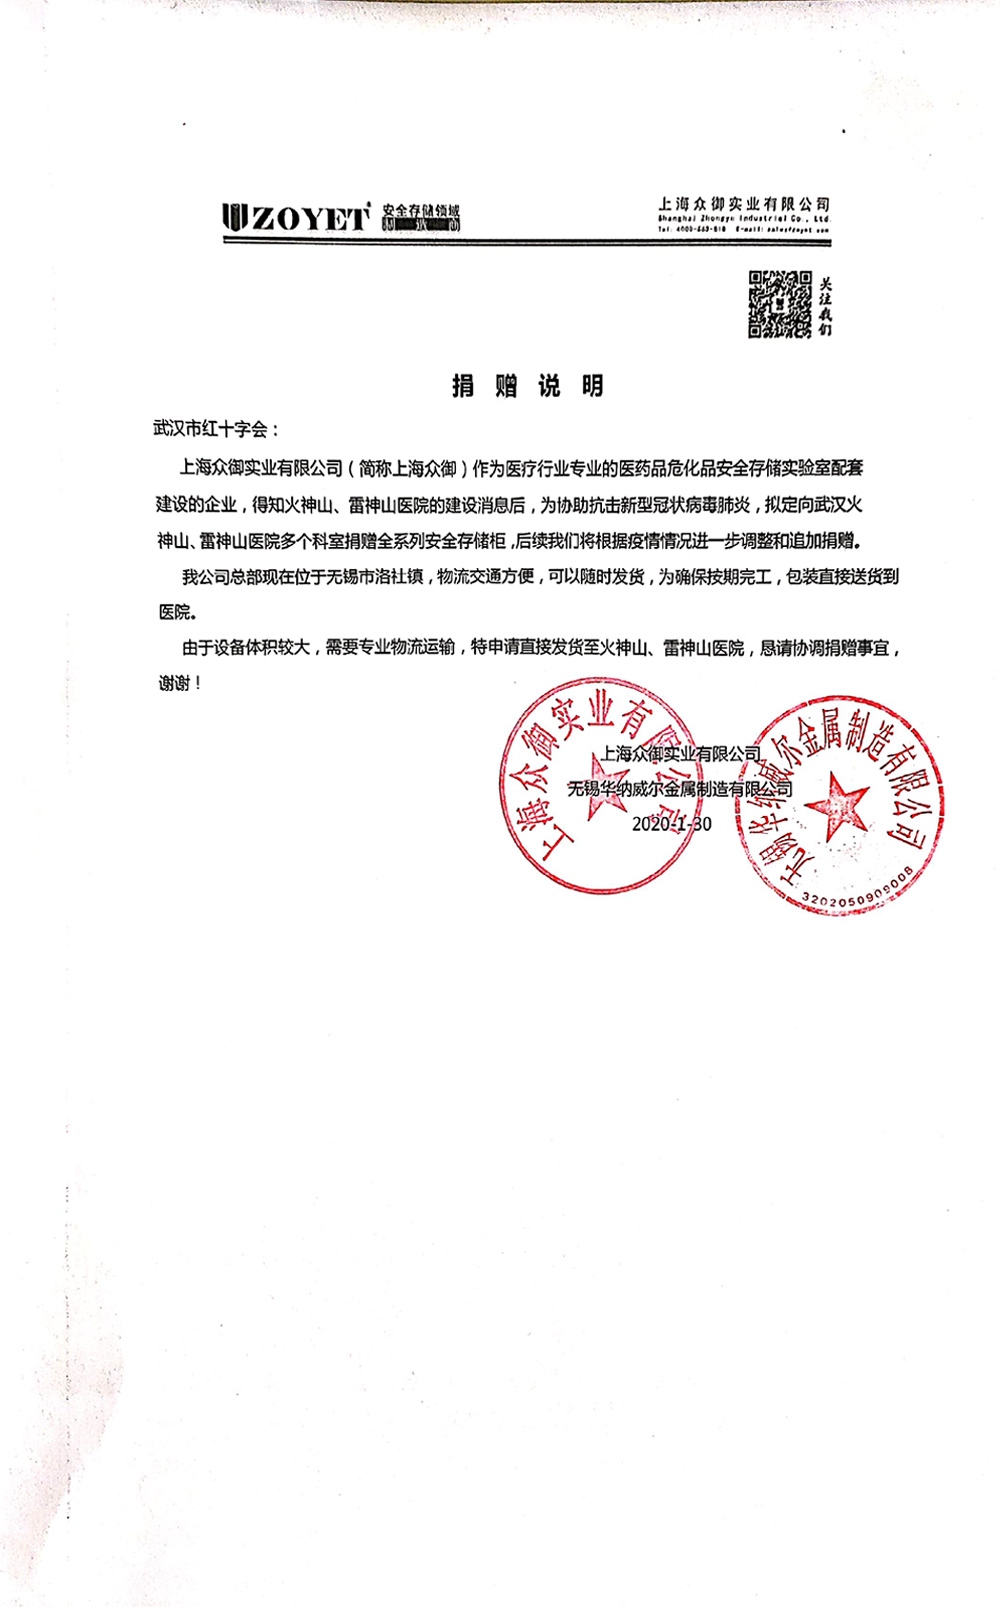 上海众御向雷神山火神山医院捐赠实验室存储柜(图1)